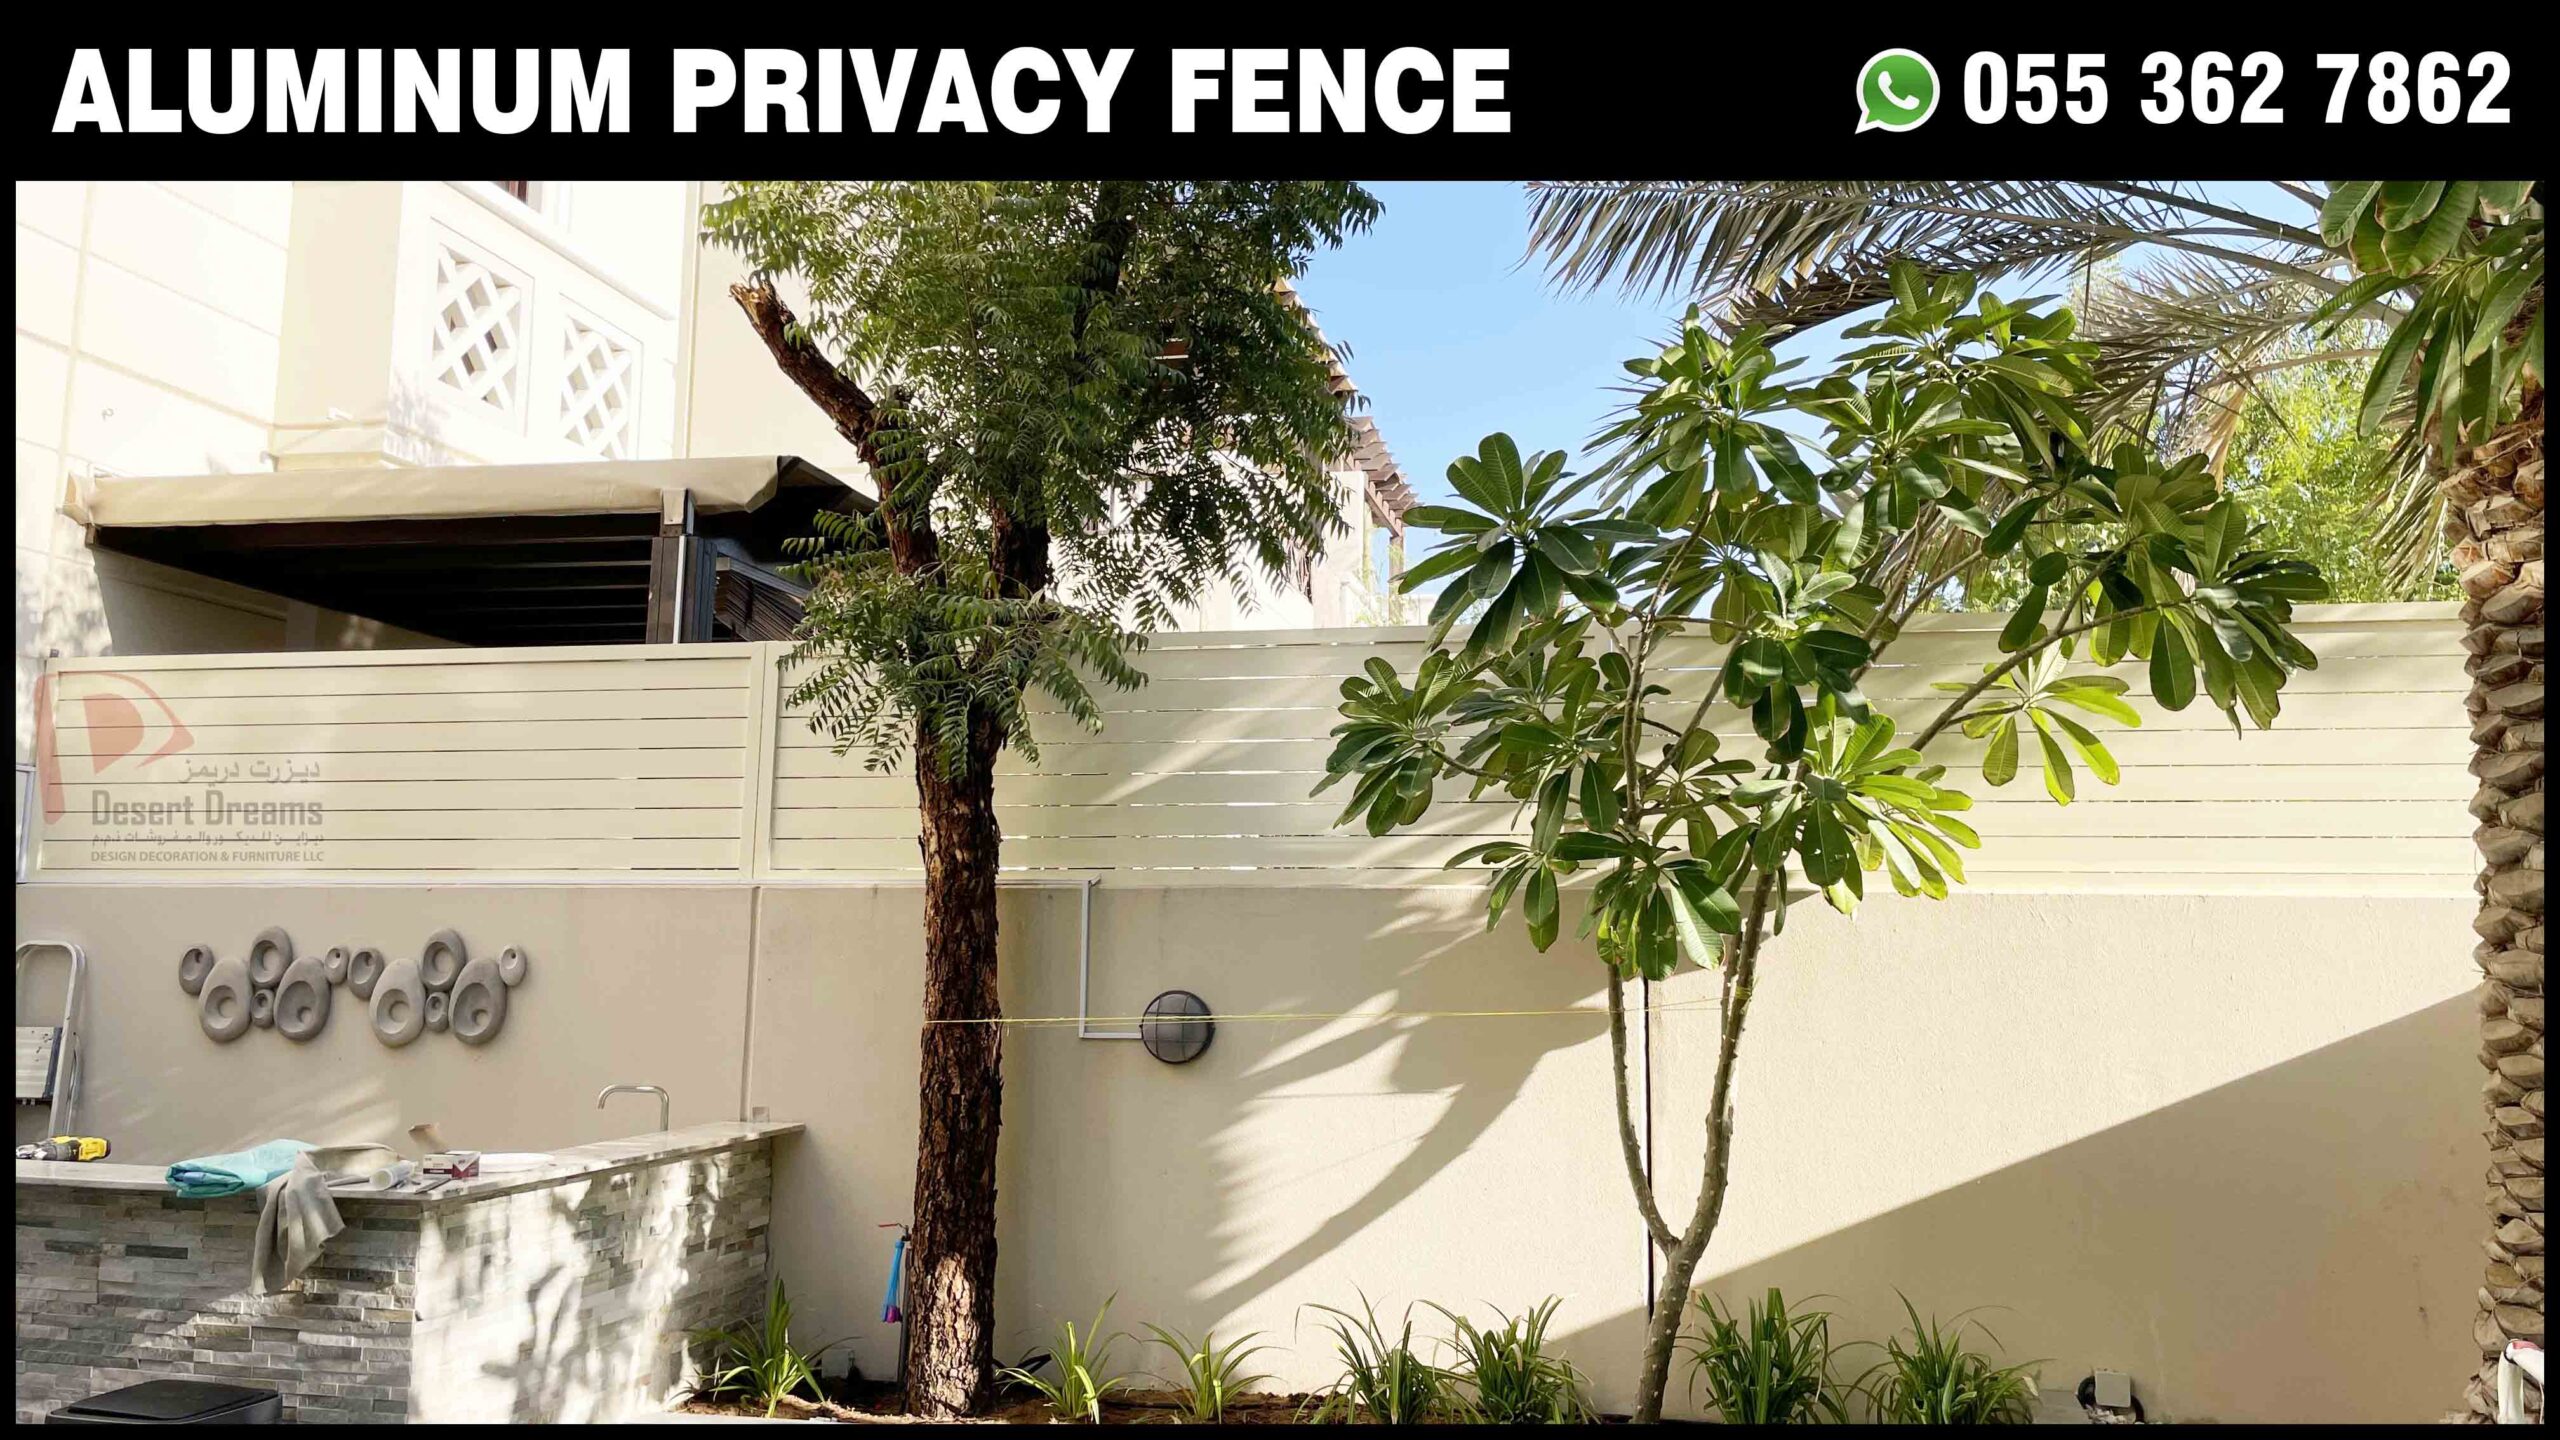 Aluminum Privacy Fences in UAE.jpg